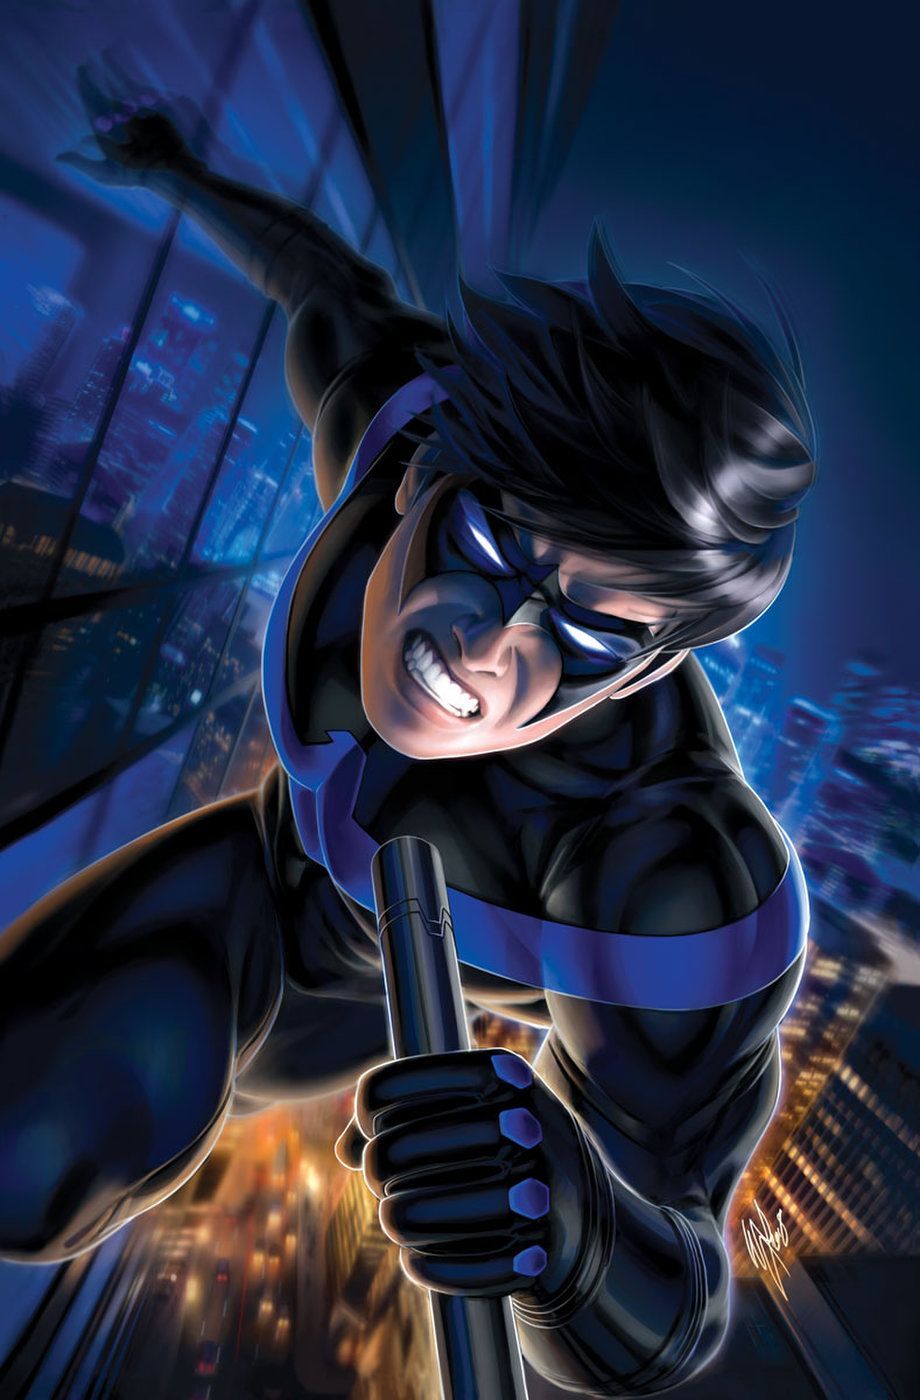 DC Comics MAY 2019 Solicitations. Dc comics wallpaper, Nightwing, Dc comics characters